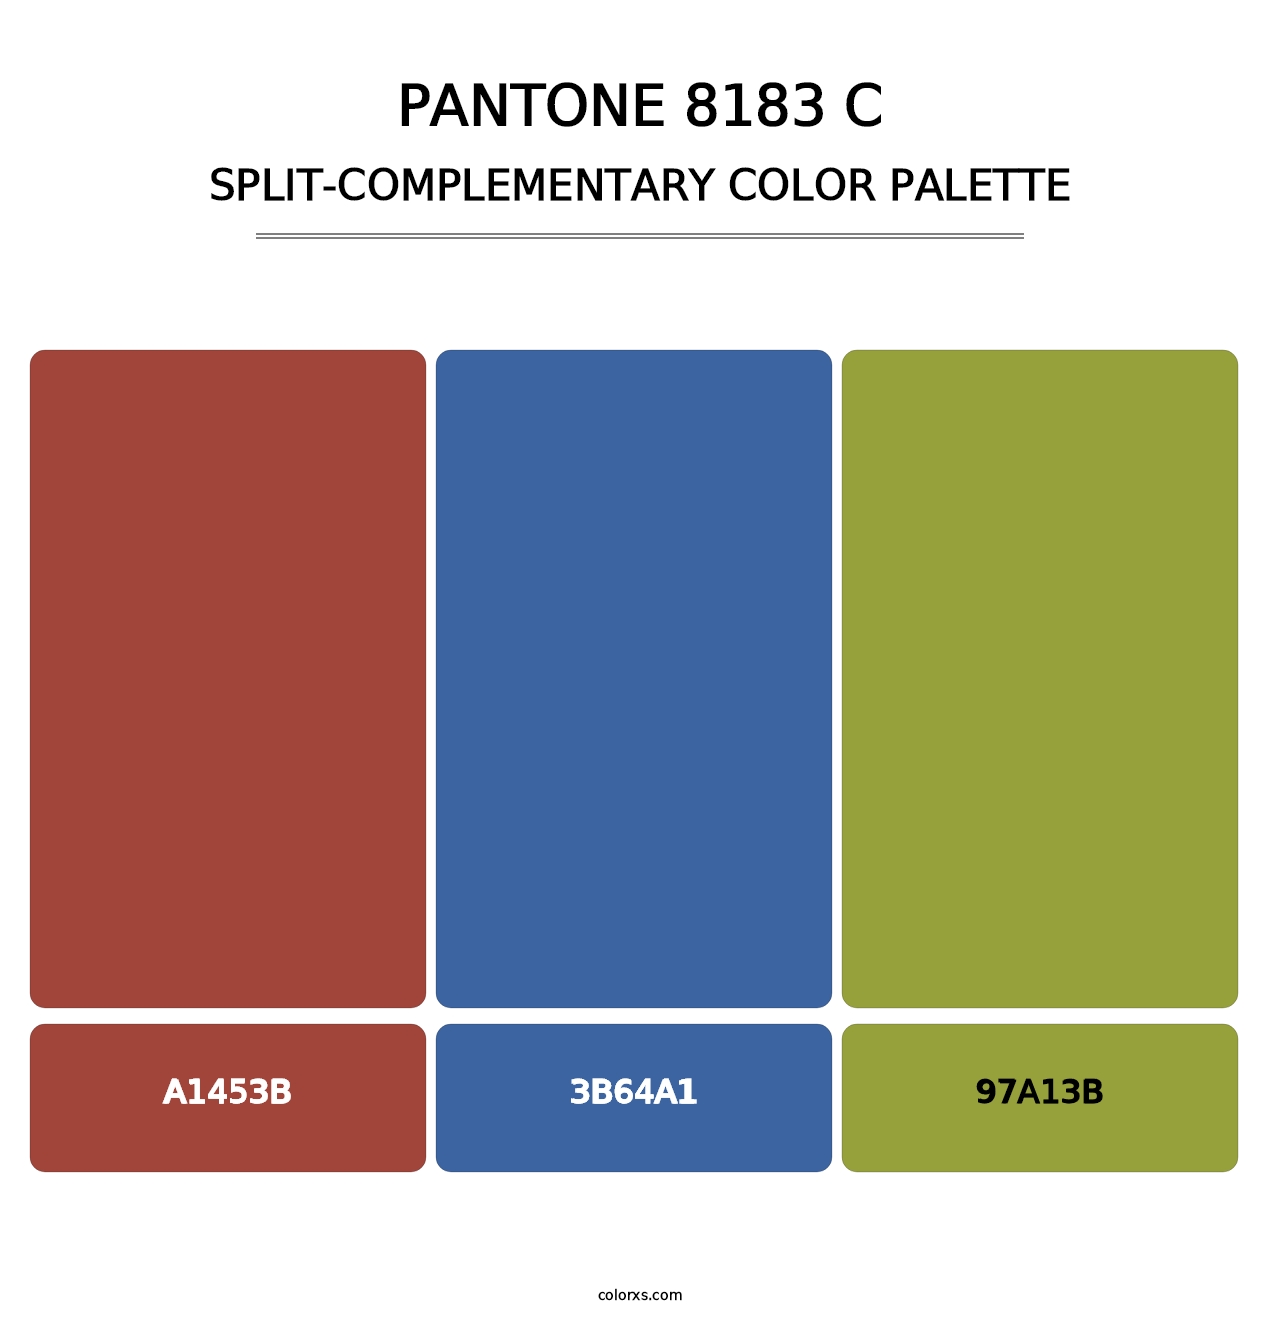 PANTONE 8183 C - Split-Complementary Color Palette